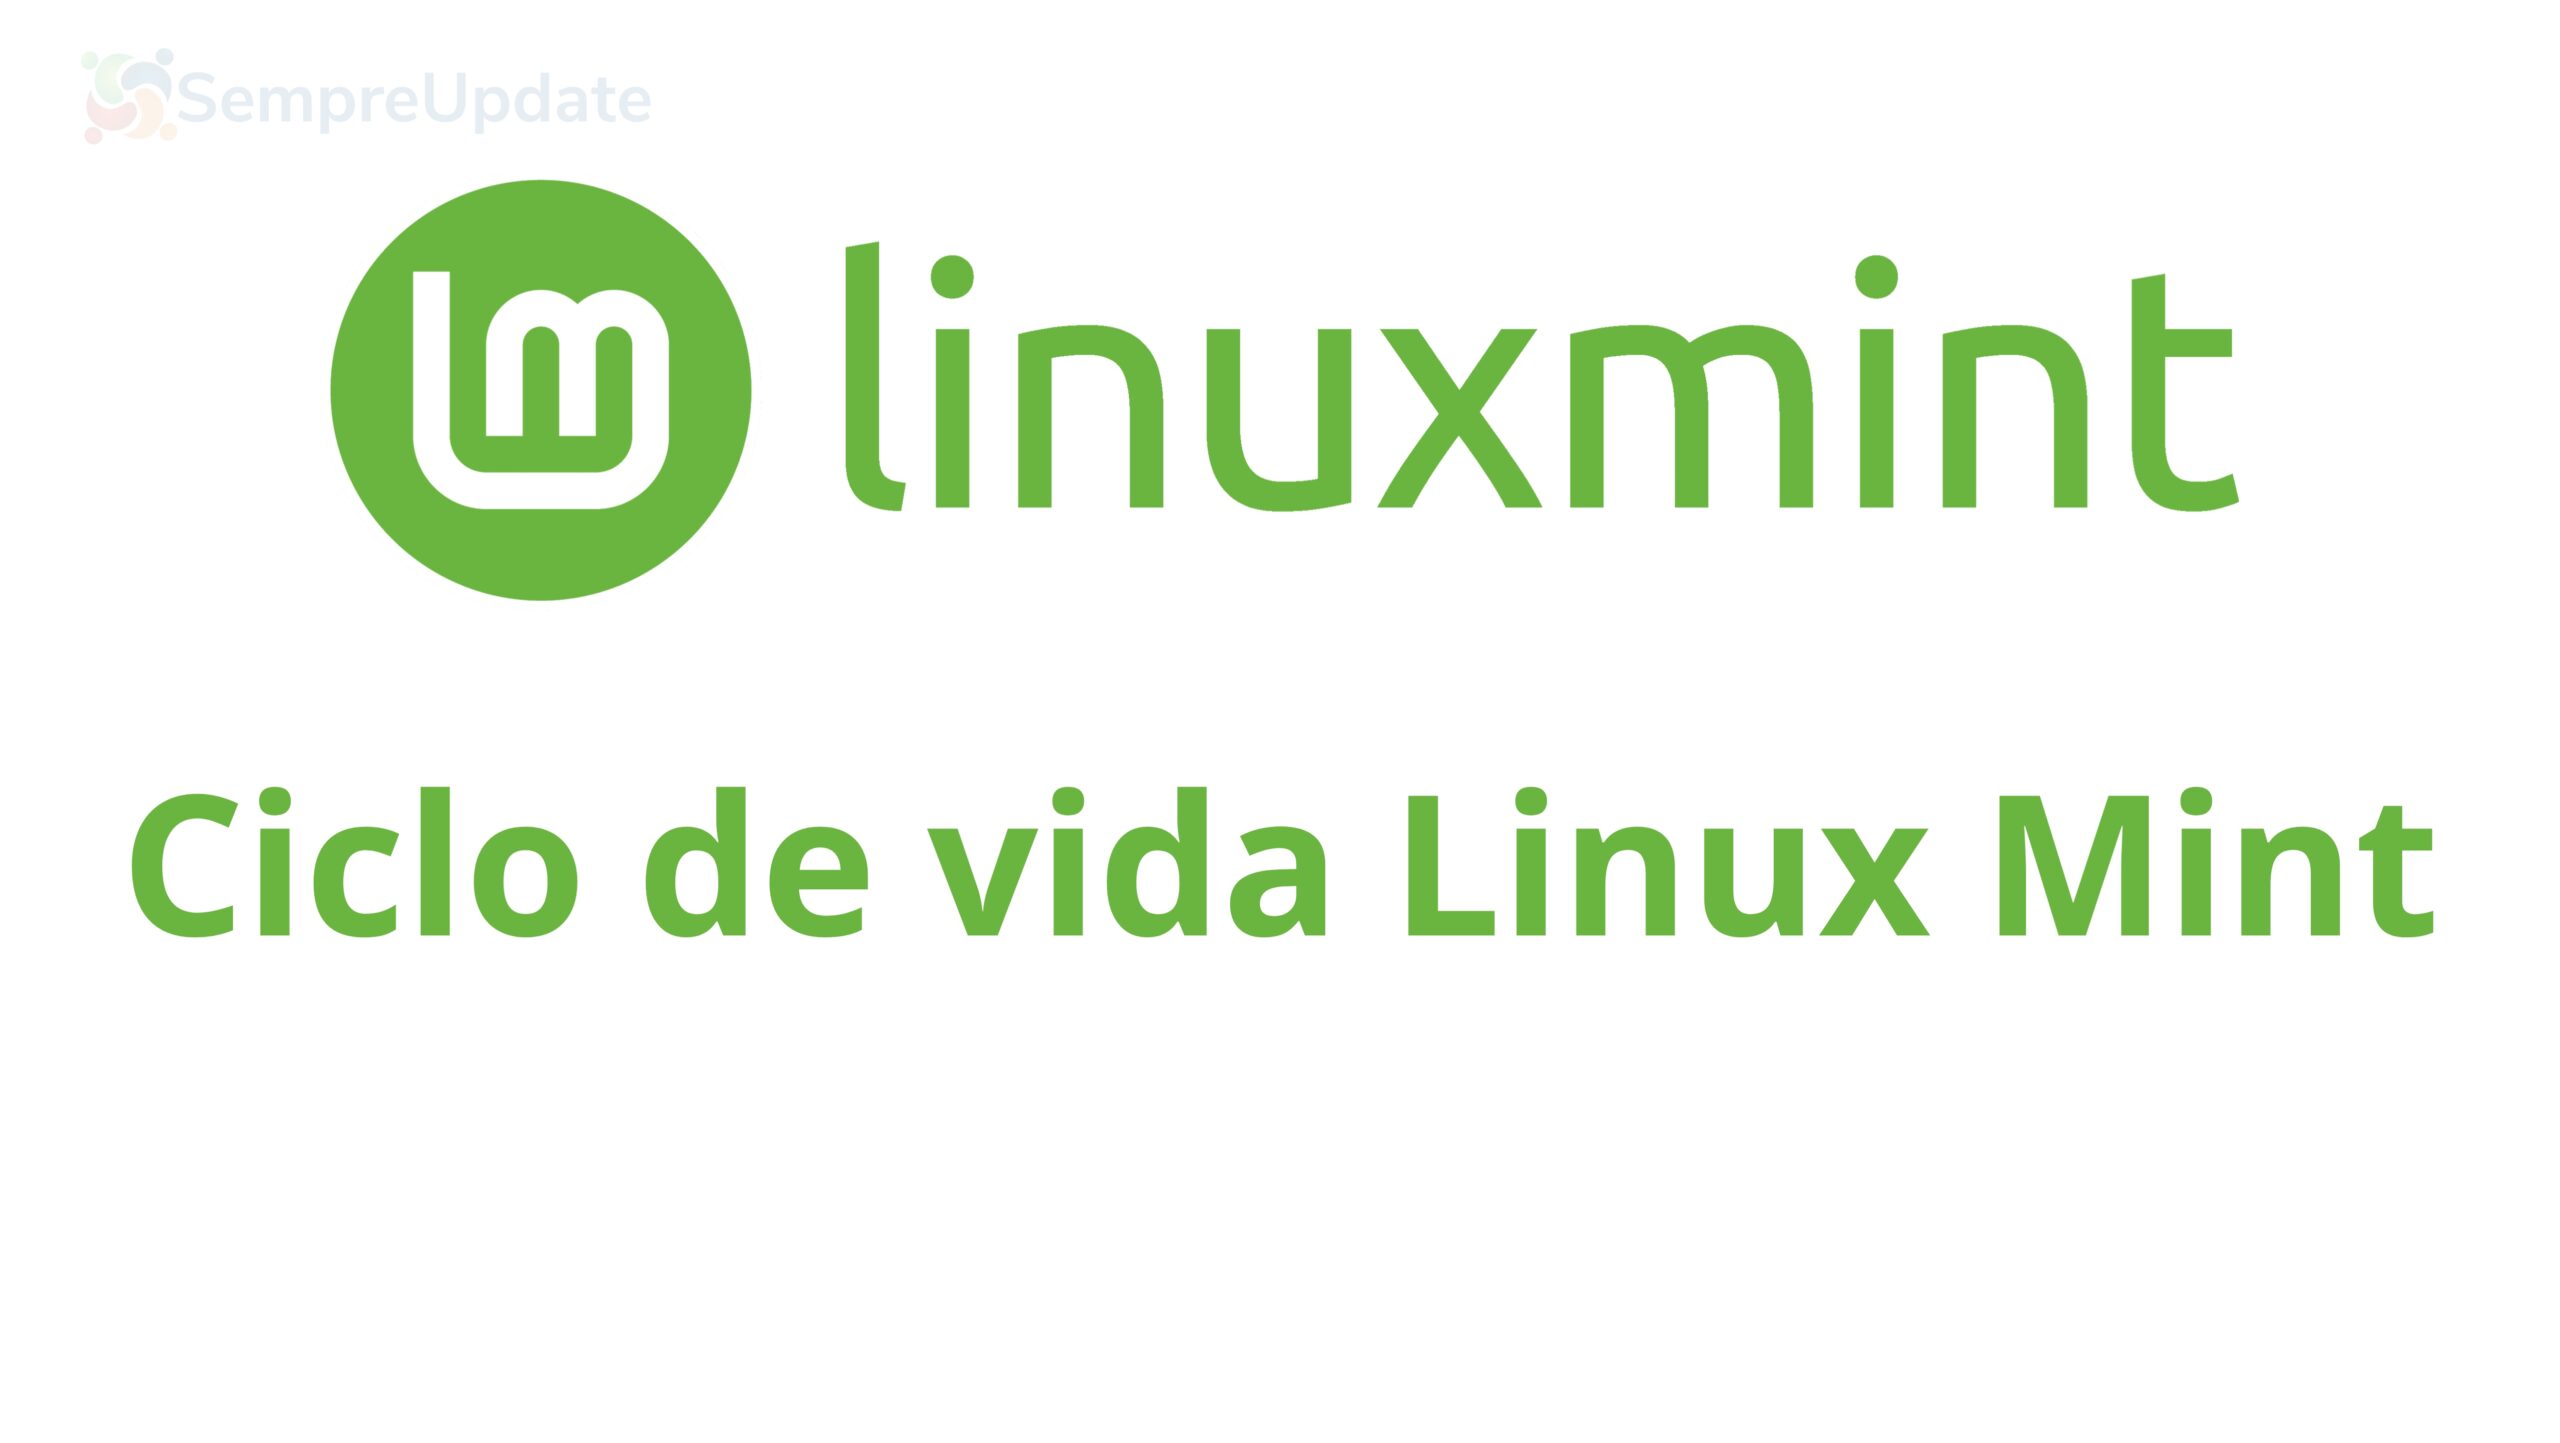 Ciclo de vida do Linux Mint: saiba quando o suporte da sua versão do Linux Mint vai encerrar